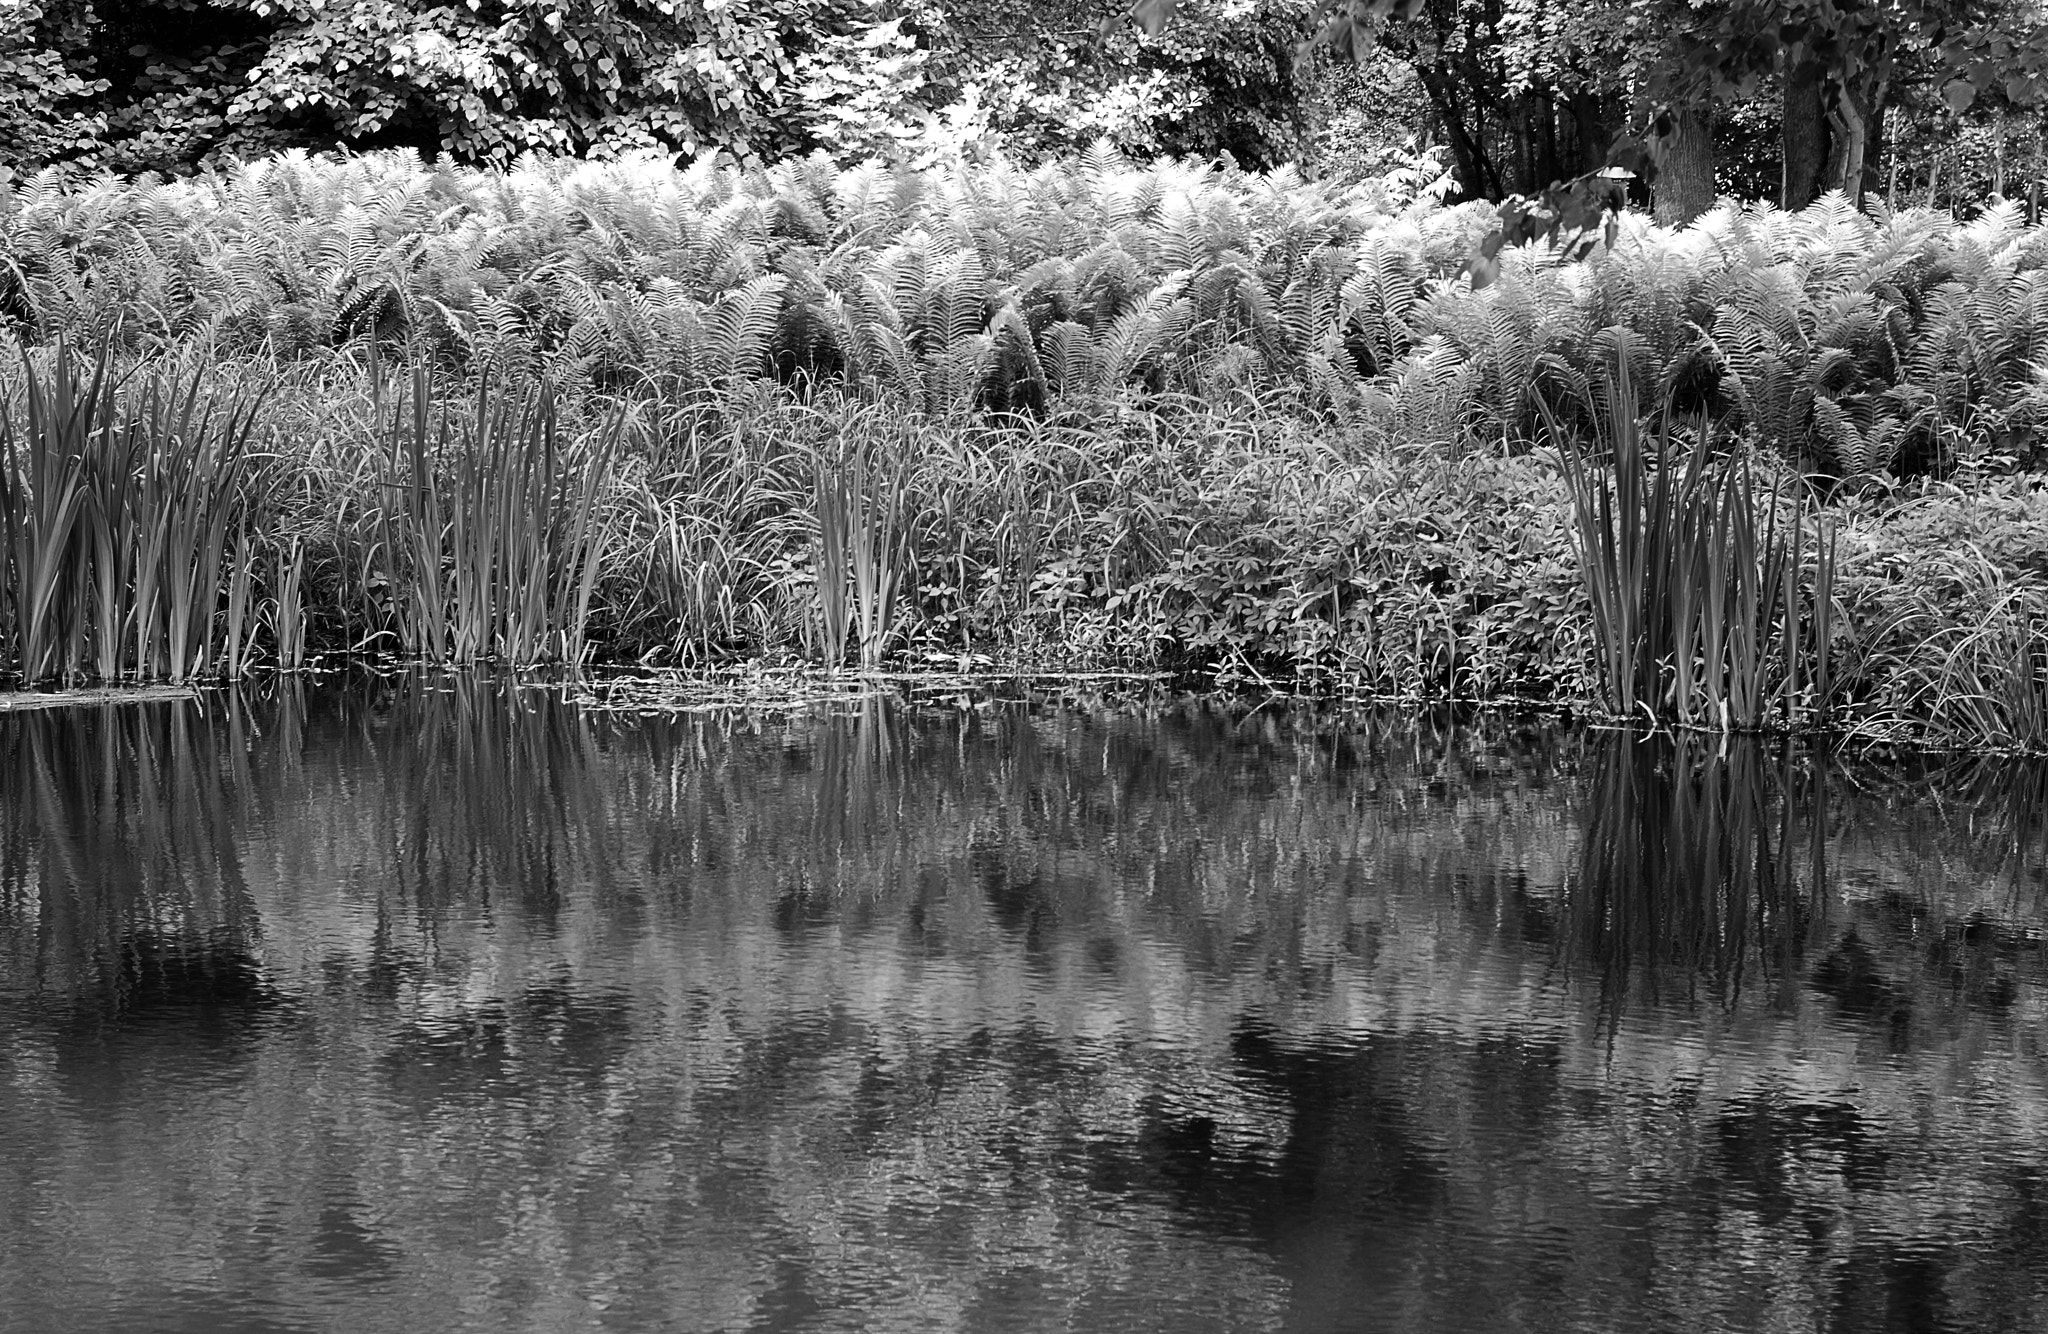 Nikon D80 + Nikon AF Nikkor 50mm F1.4D sample photo. Lake in the forest photography